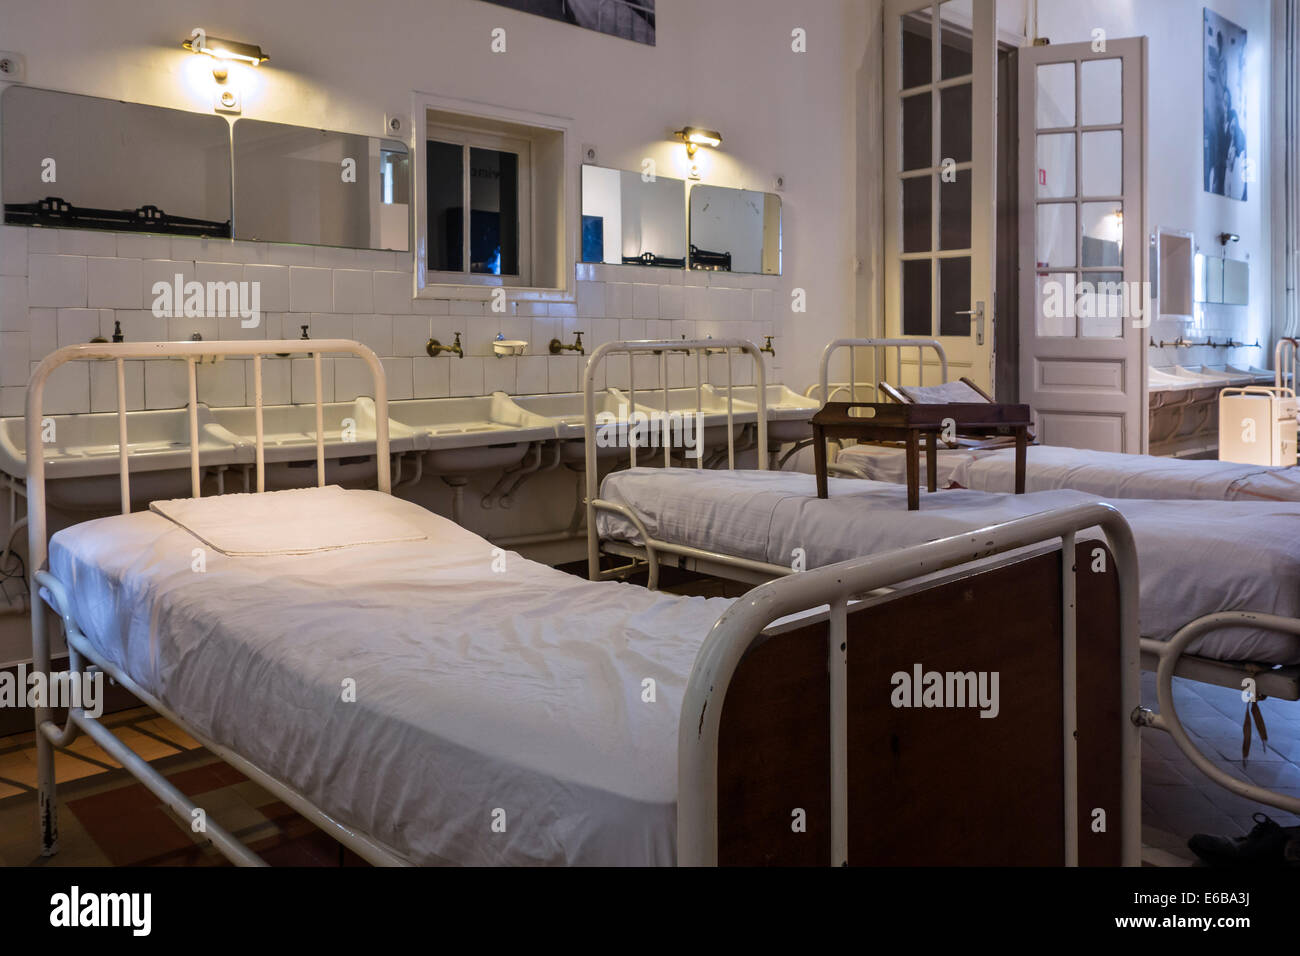 Les lits d'hôpitaux dans le Dr Guislain Musée sur l'histoire de la psychiatrie dans l'hôpital psychiatrique de la Belgique d'abord à Gand Banque D'Images